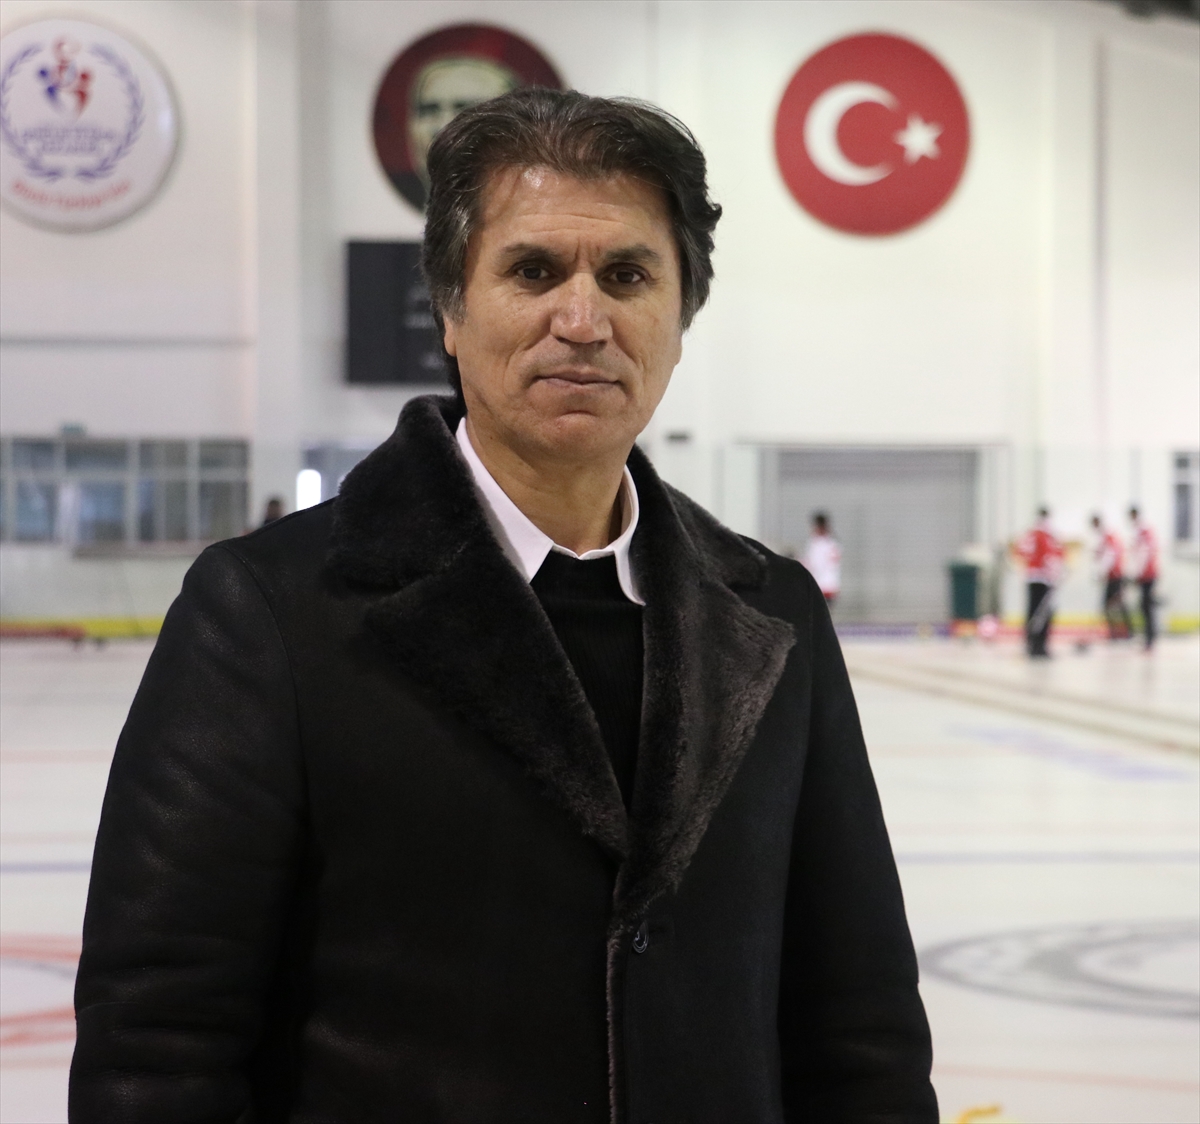 Türkiye curlingde olimpiyatları hedefliyor